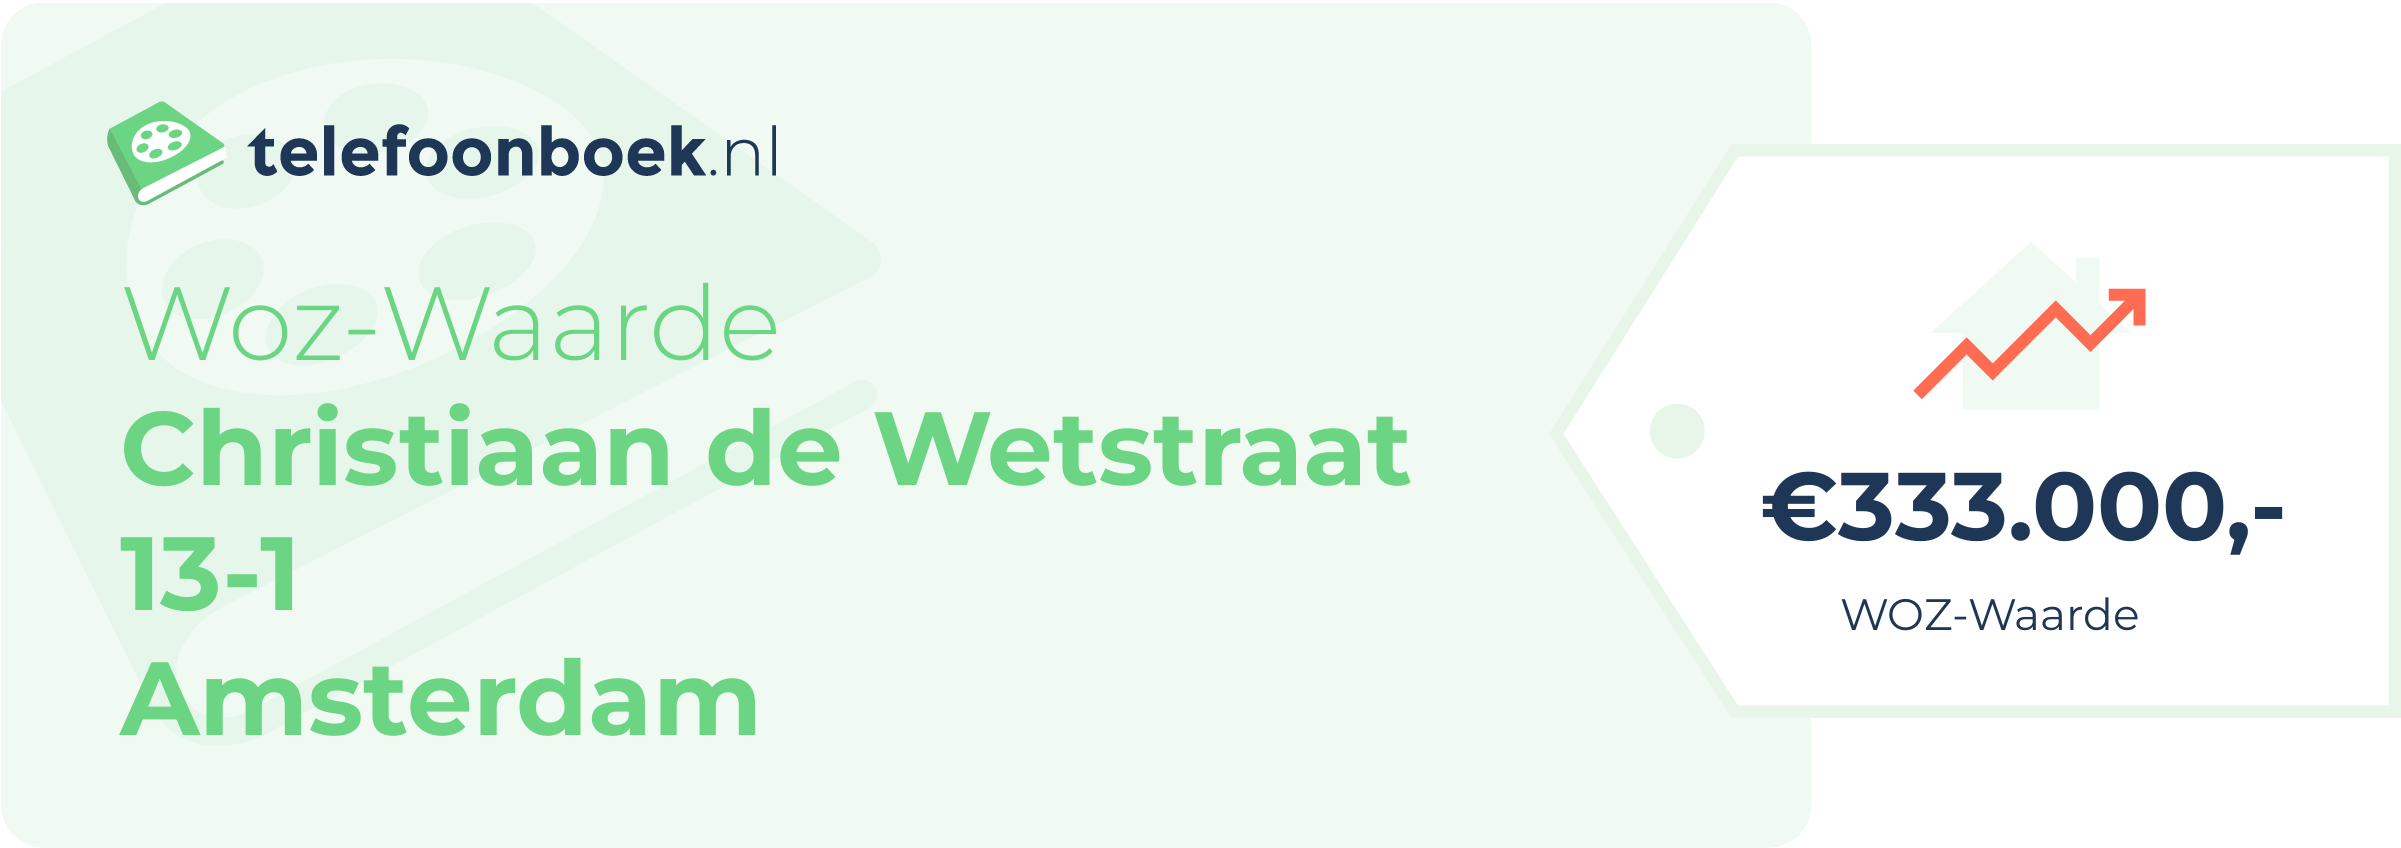 WOZ-waarde Christiaan De Wetstraat 13-1 Amsterdam